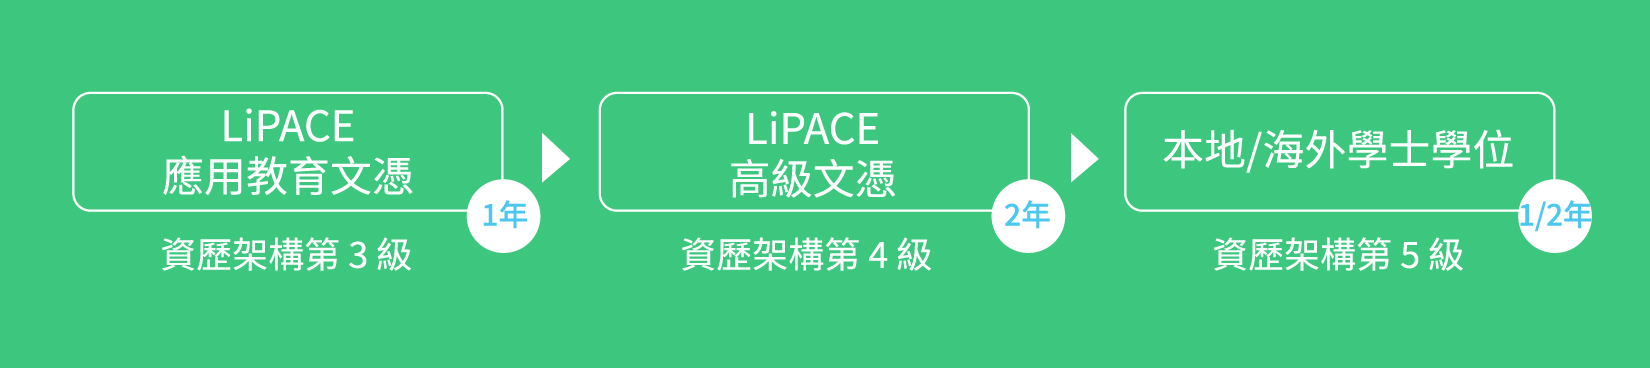 LiPACE應用教育文憑 >LiPACE高級文憑>本地/海外學士 